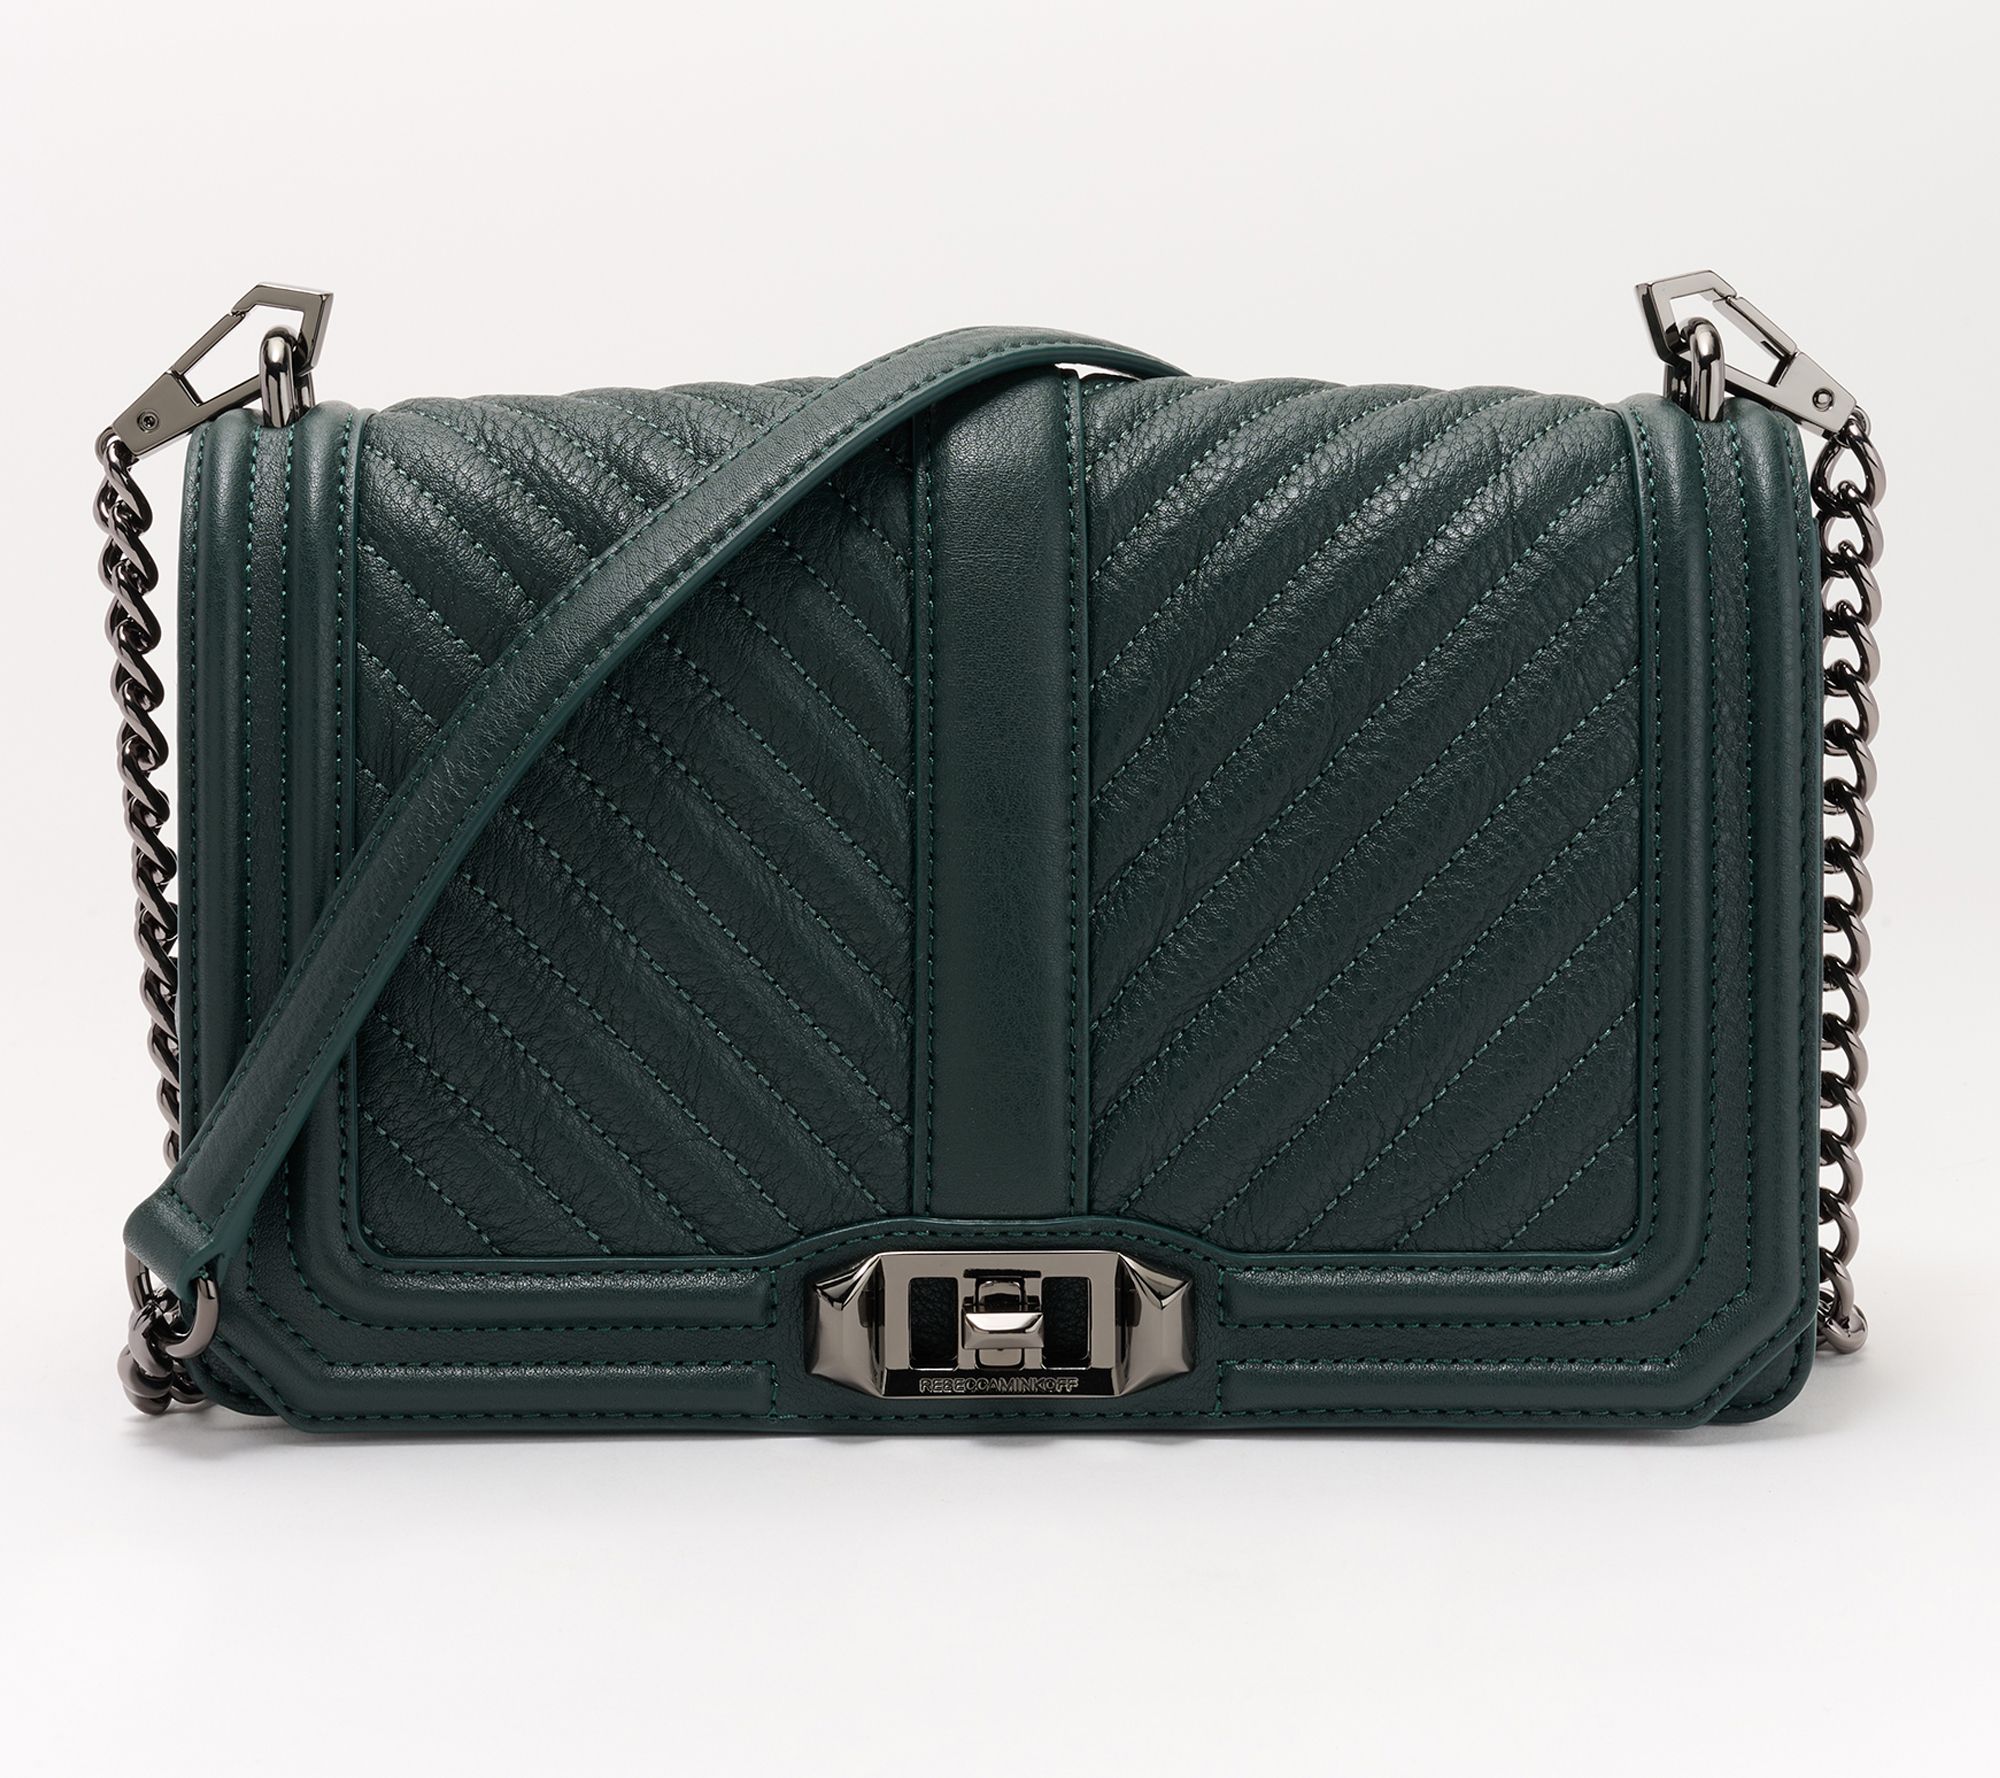 New Arrival Handbags ― New Handbags - QVC.com  Crossbody saddle bag, New  handbags, Train case